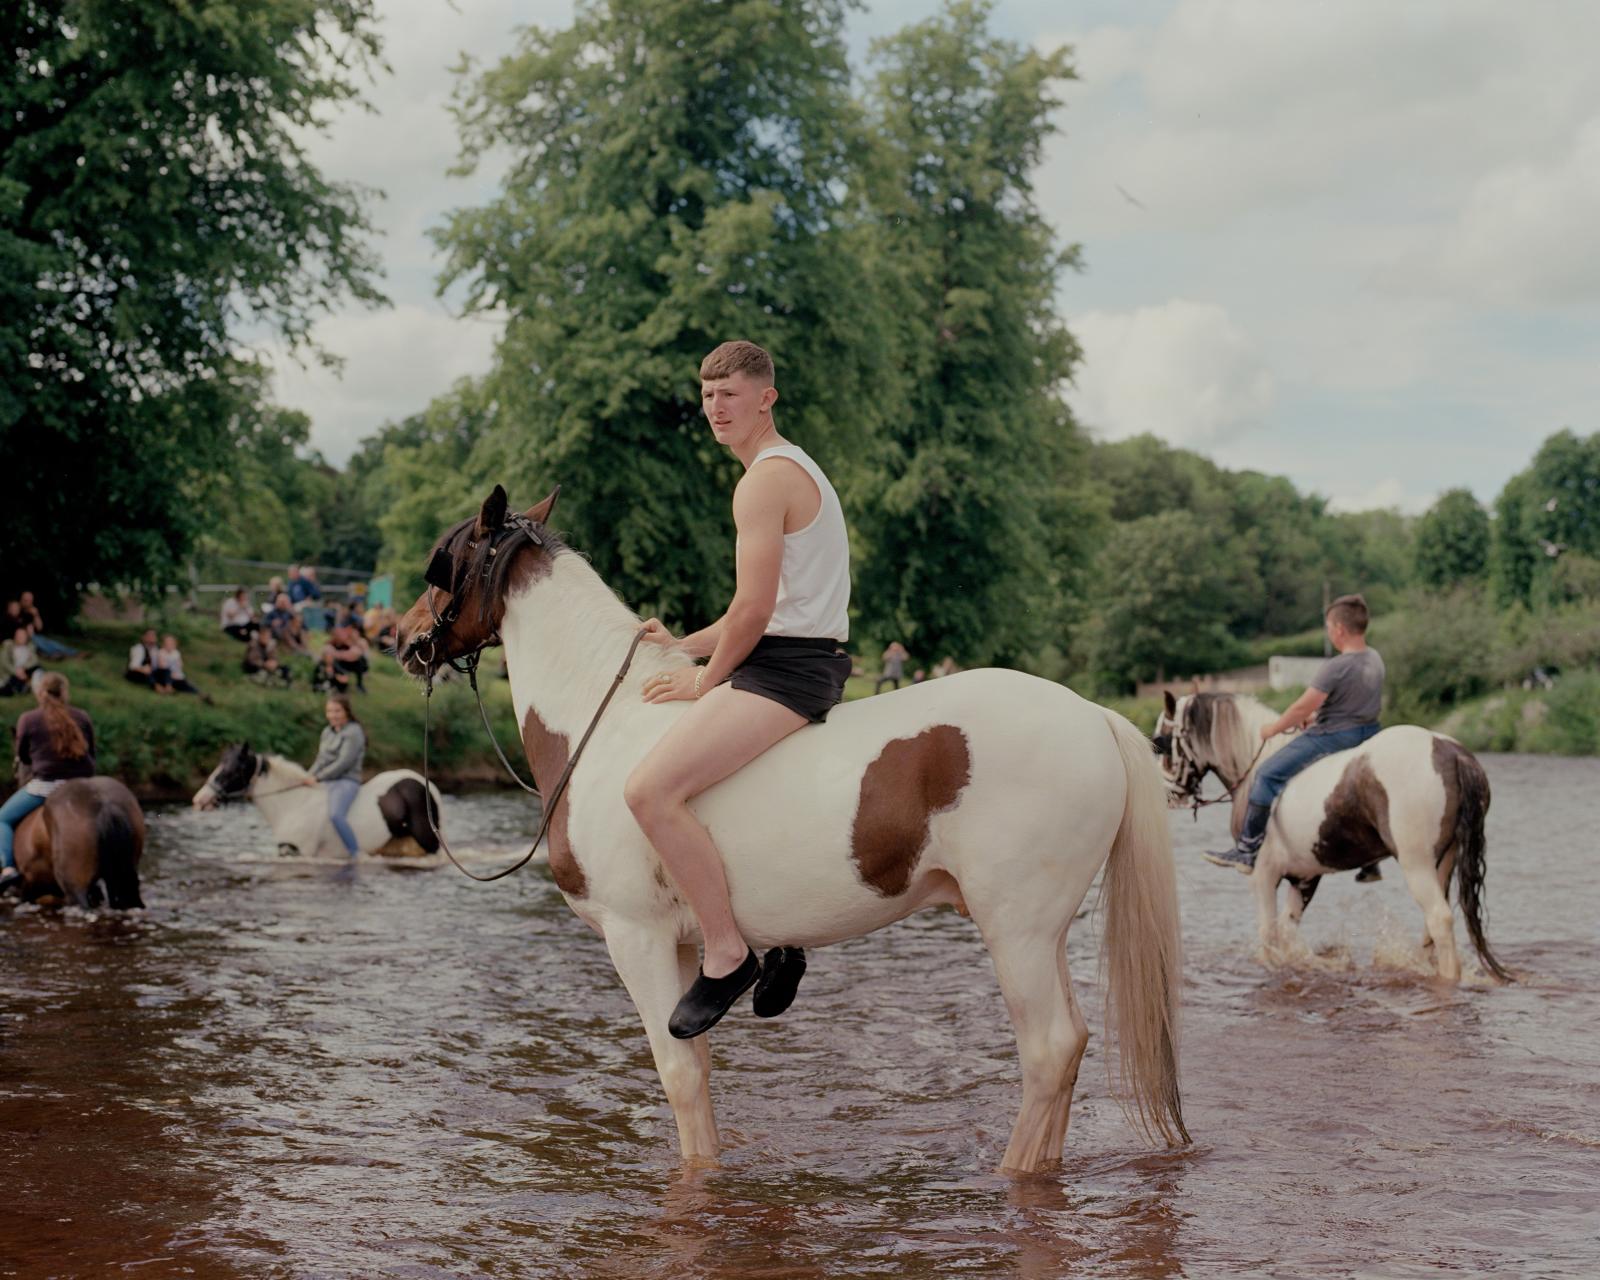 A boy in River Eden, Appleby Fair. England, 2019.